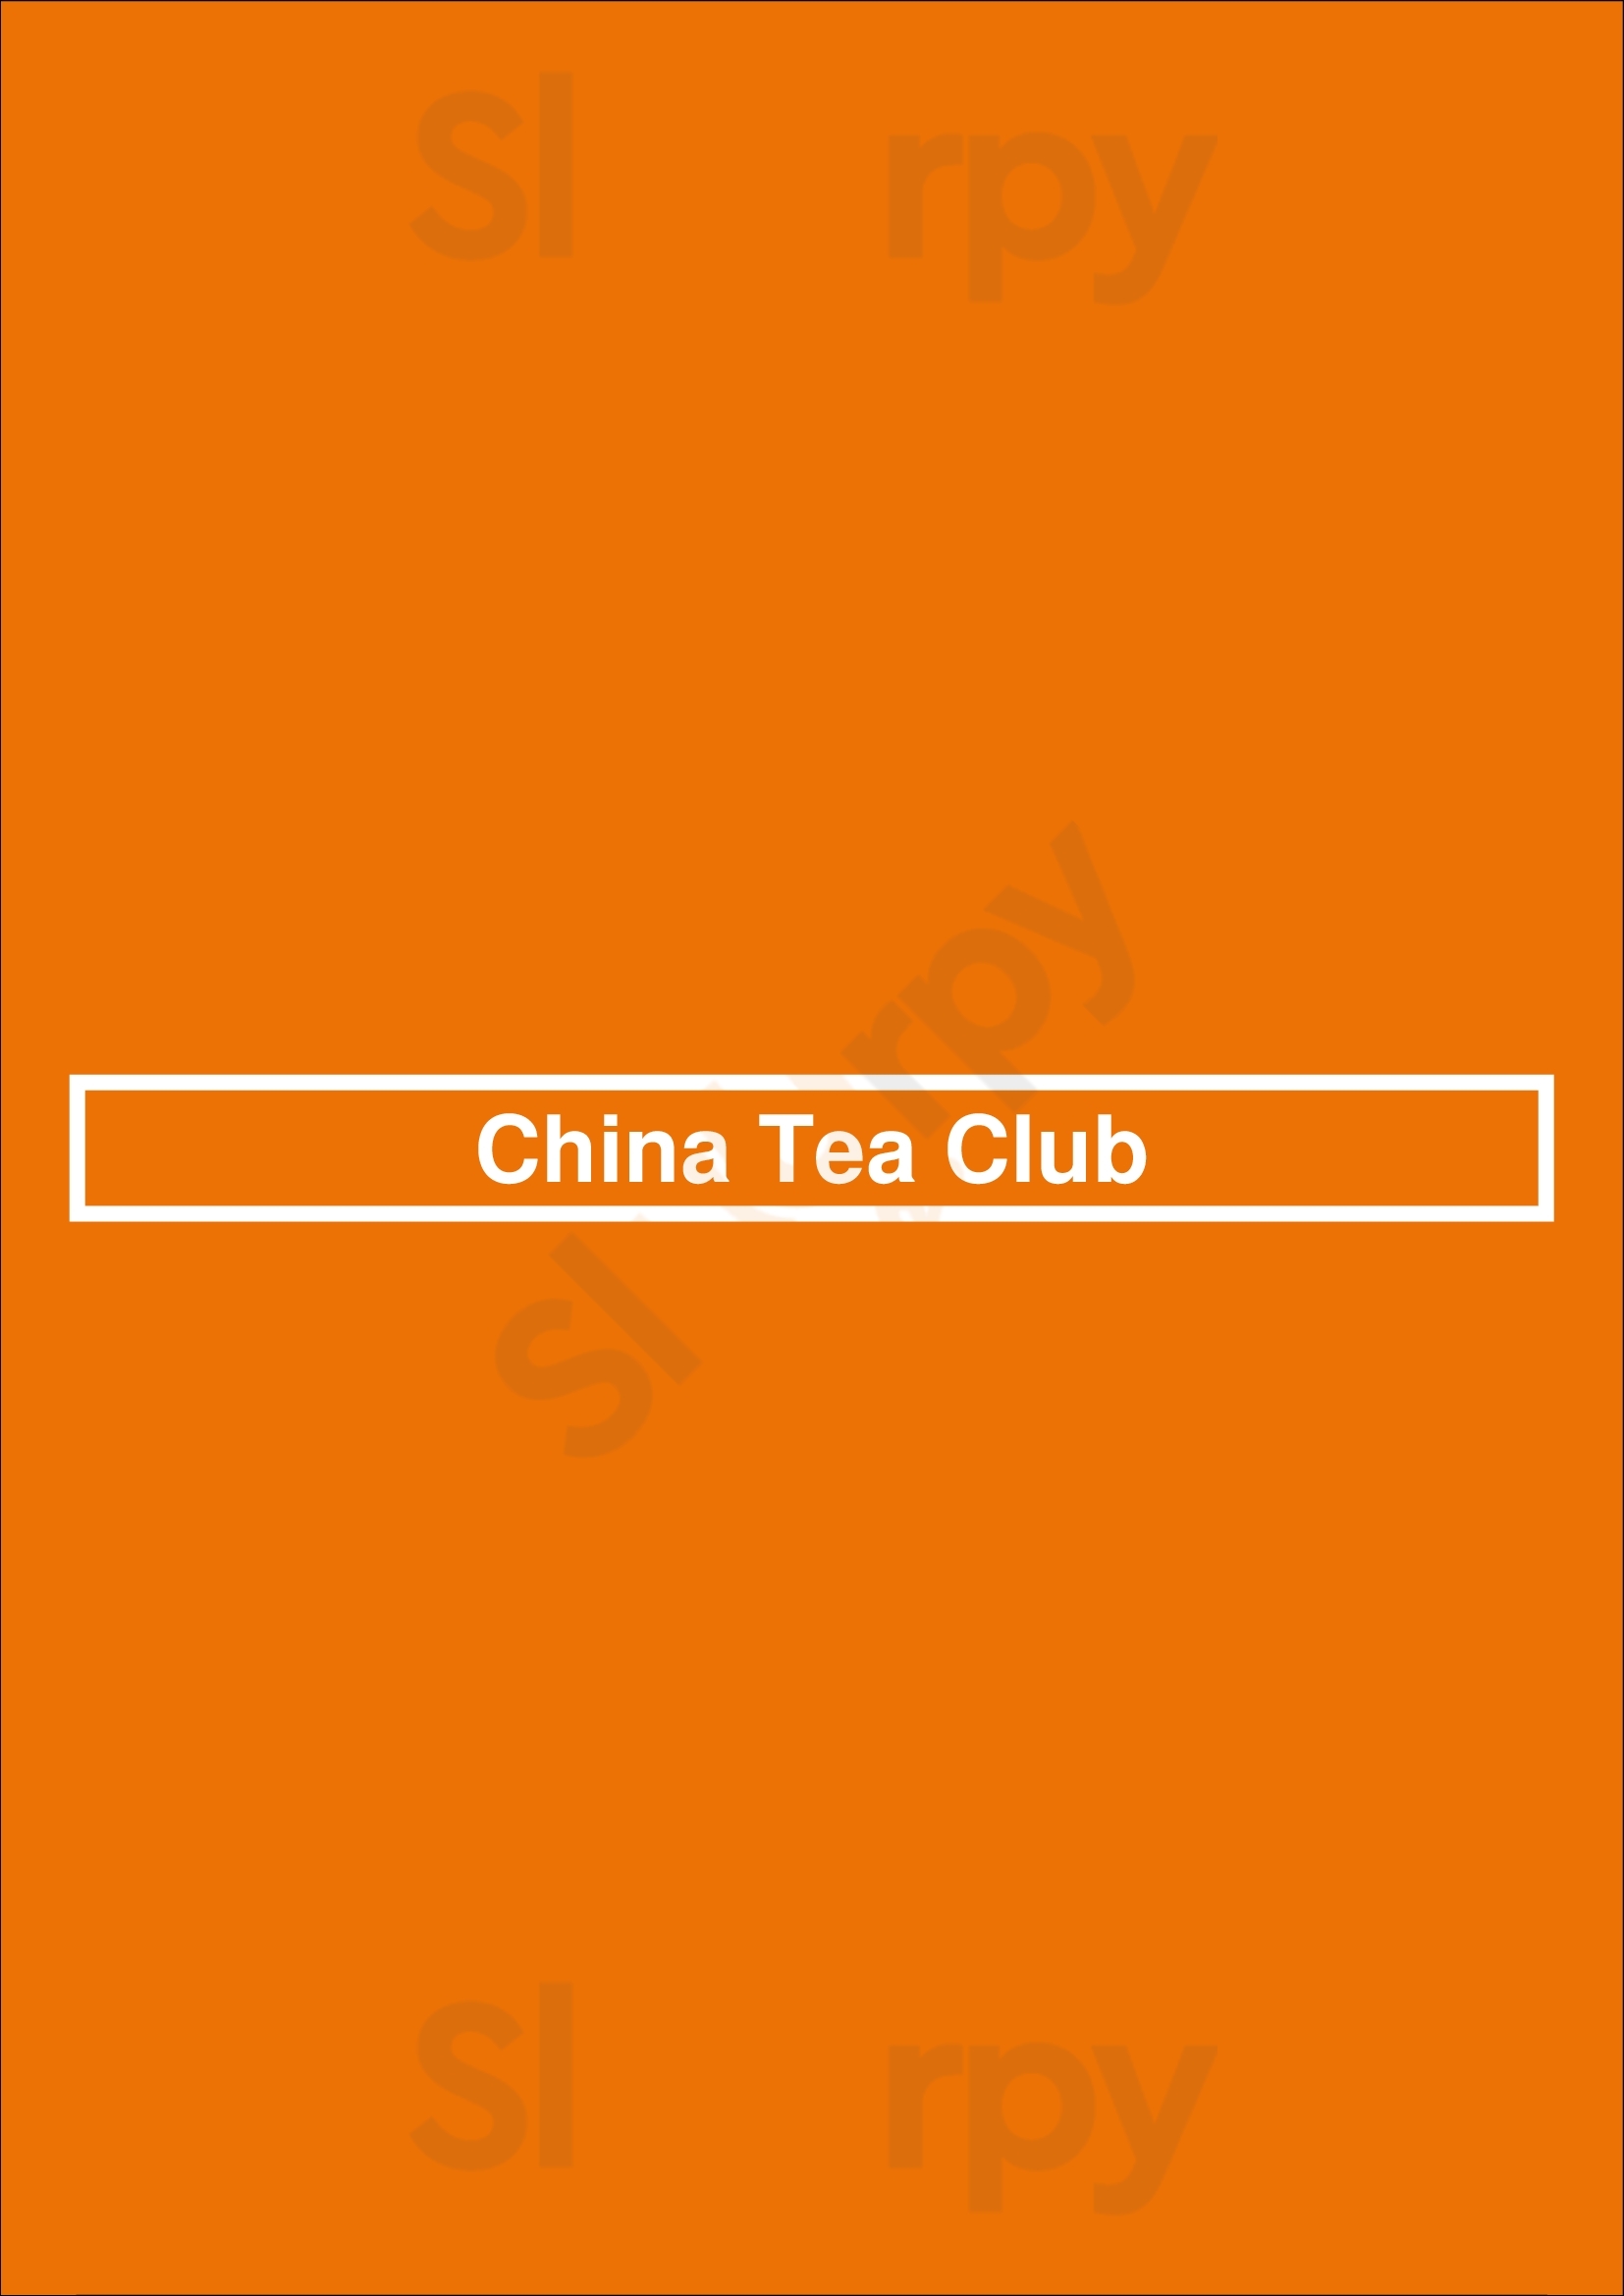 China Tea Club Canberra Menu - 1